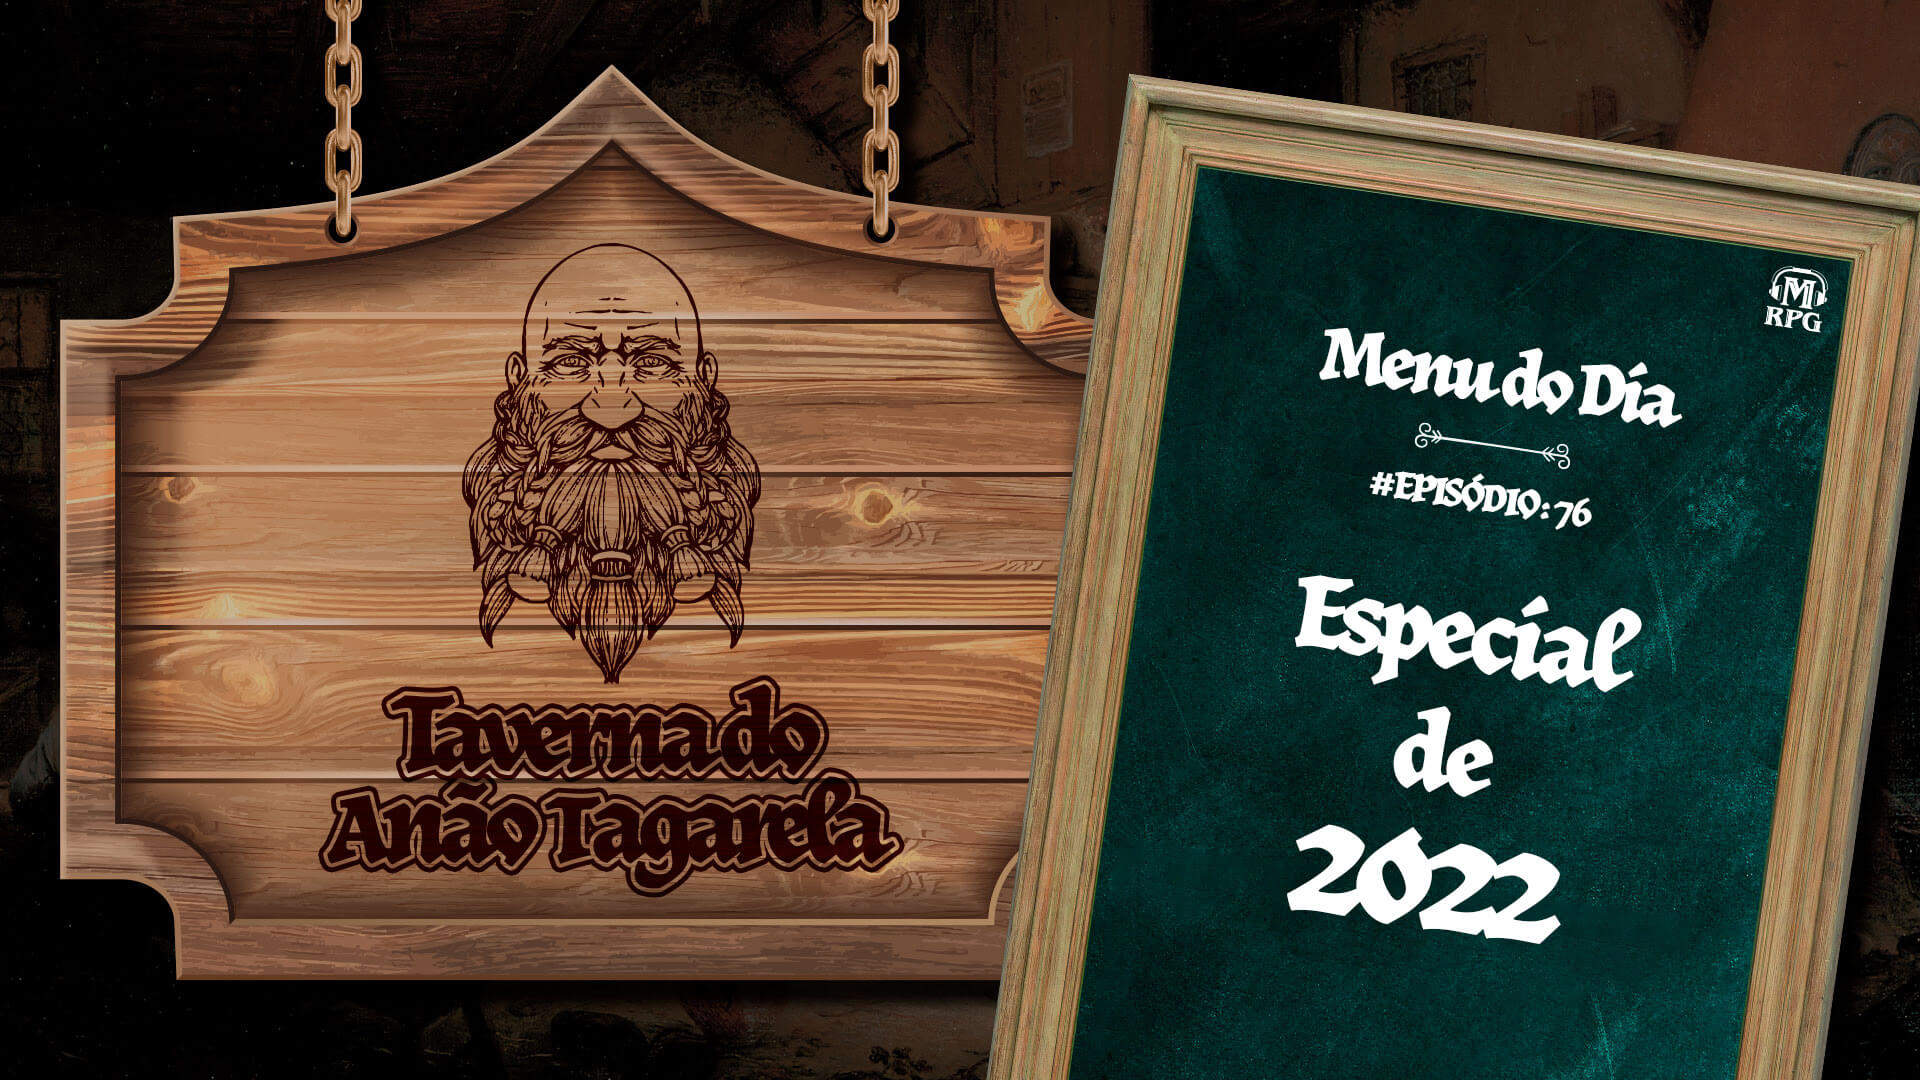 Especial de 2022 – Taverna do Anão Tagarela #76